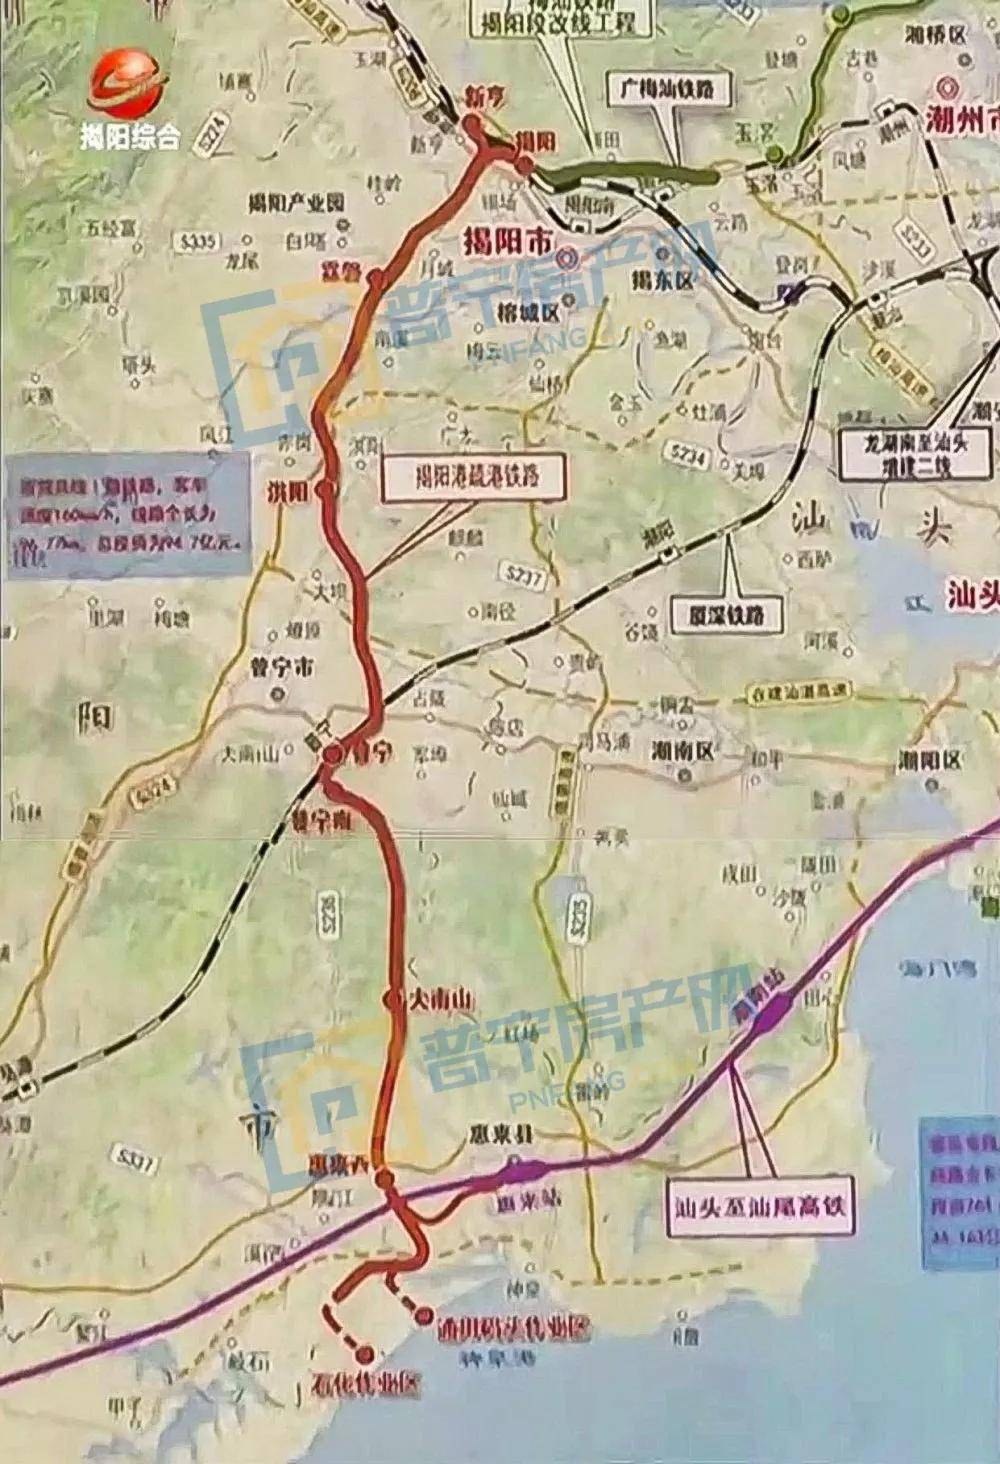 突破性进展!新建揭阳港疏港铁路可研报告通过评审!